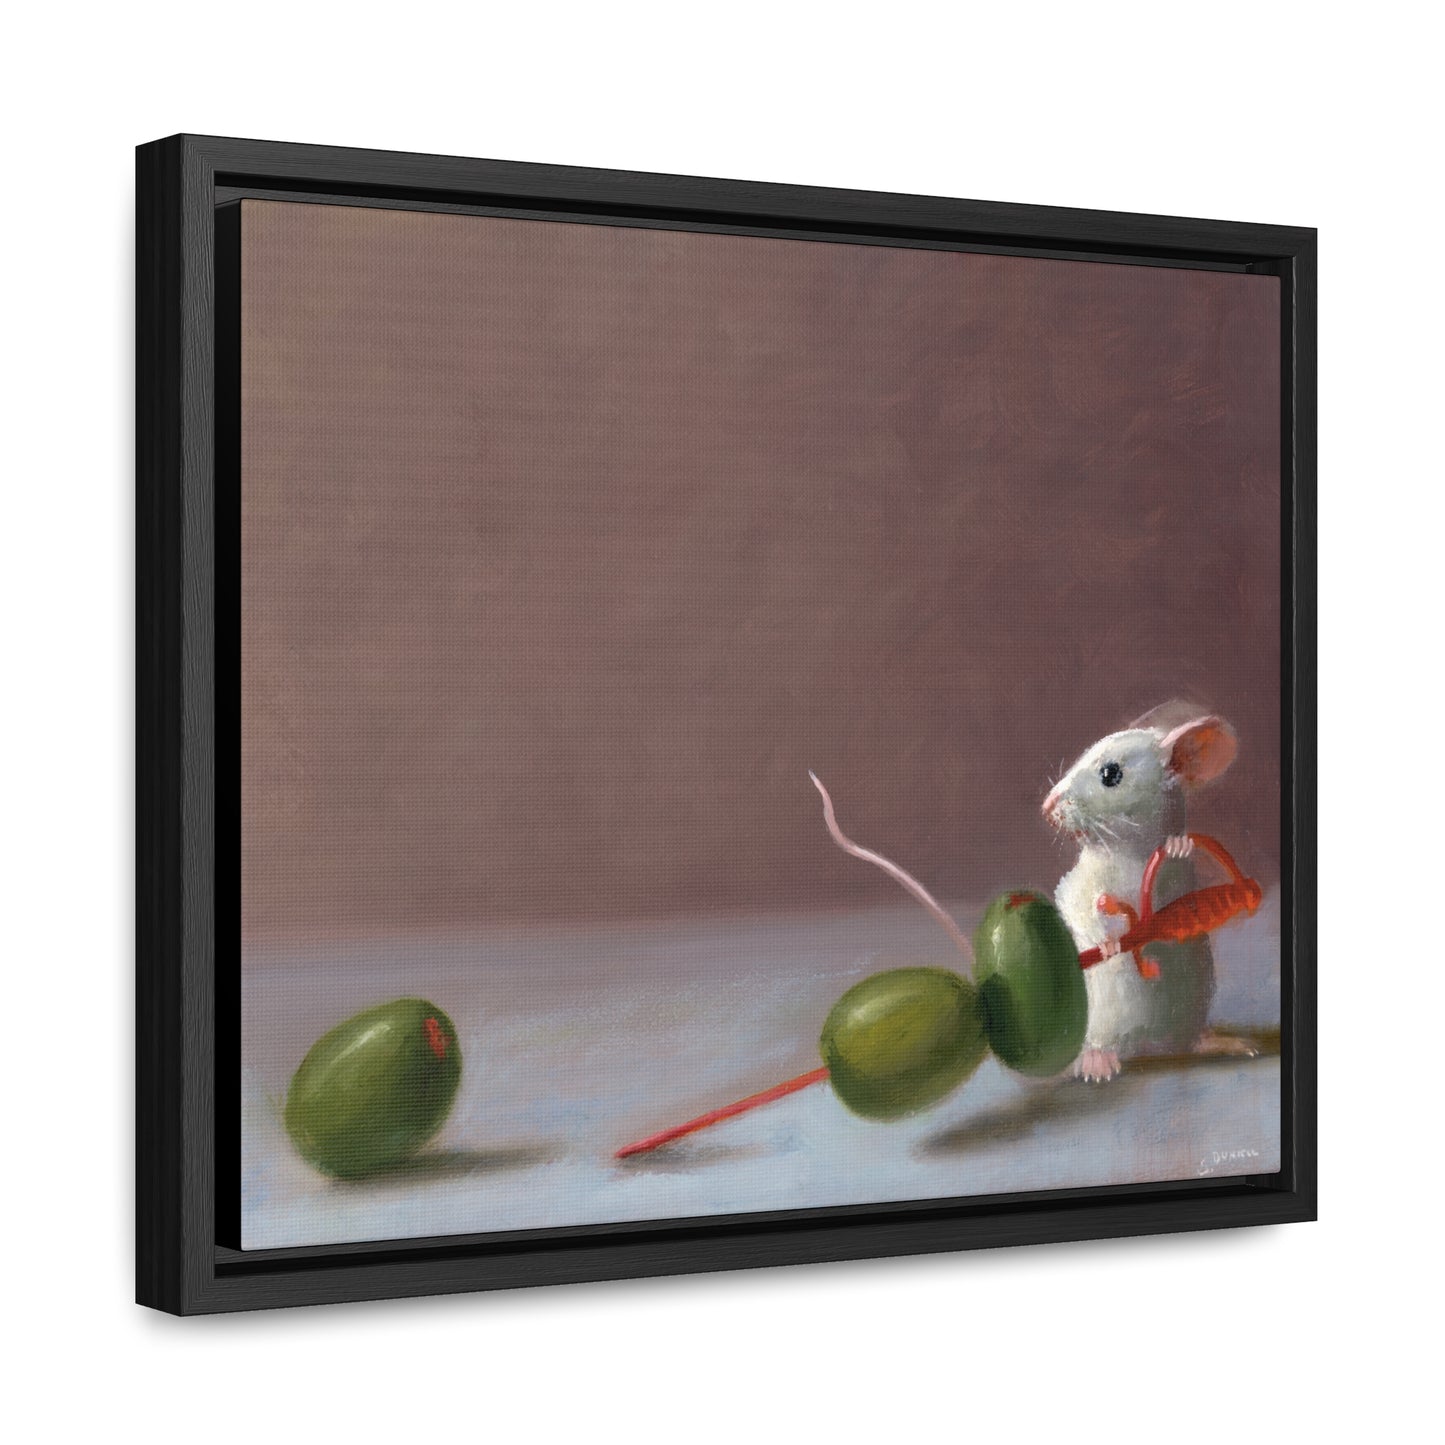 Stuart Dunkel: "Olive Catcher" - Framed Canvas Reproduction